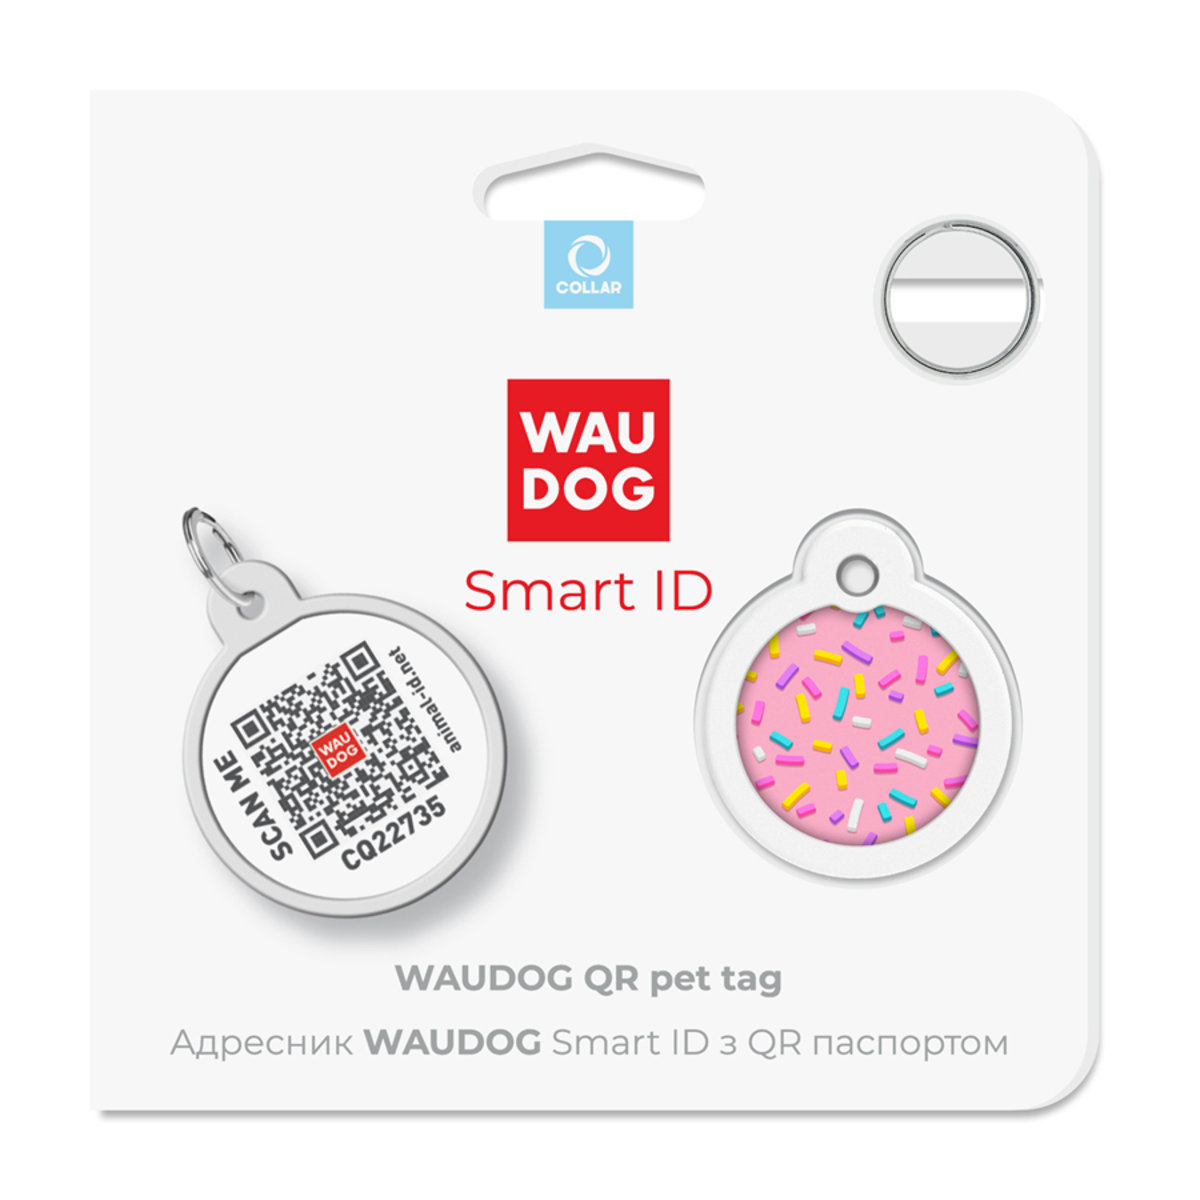 Адресник для собак и кошек Waudog Smart ID с QR паспортом, Маршмеллоу, S, диаметр 25 мм - фото 5